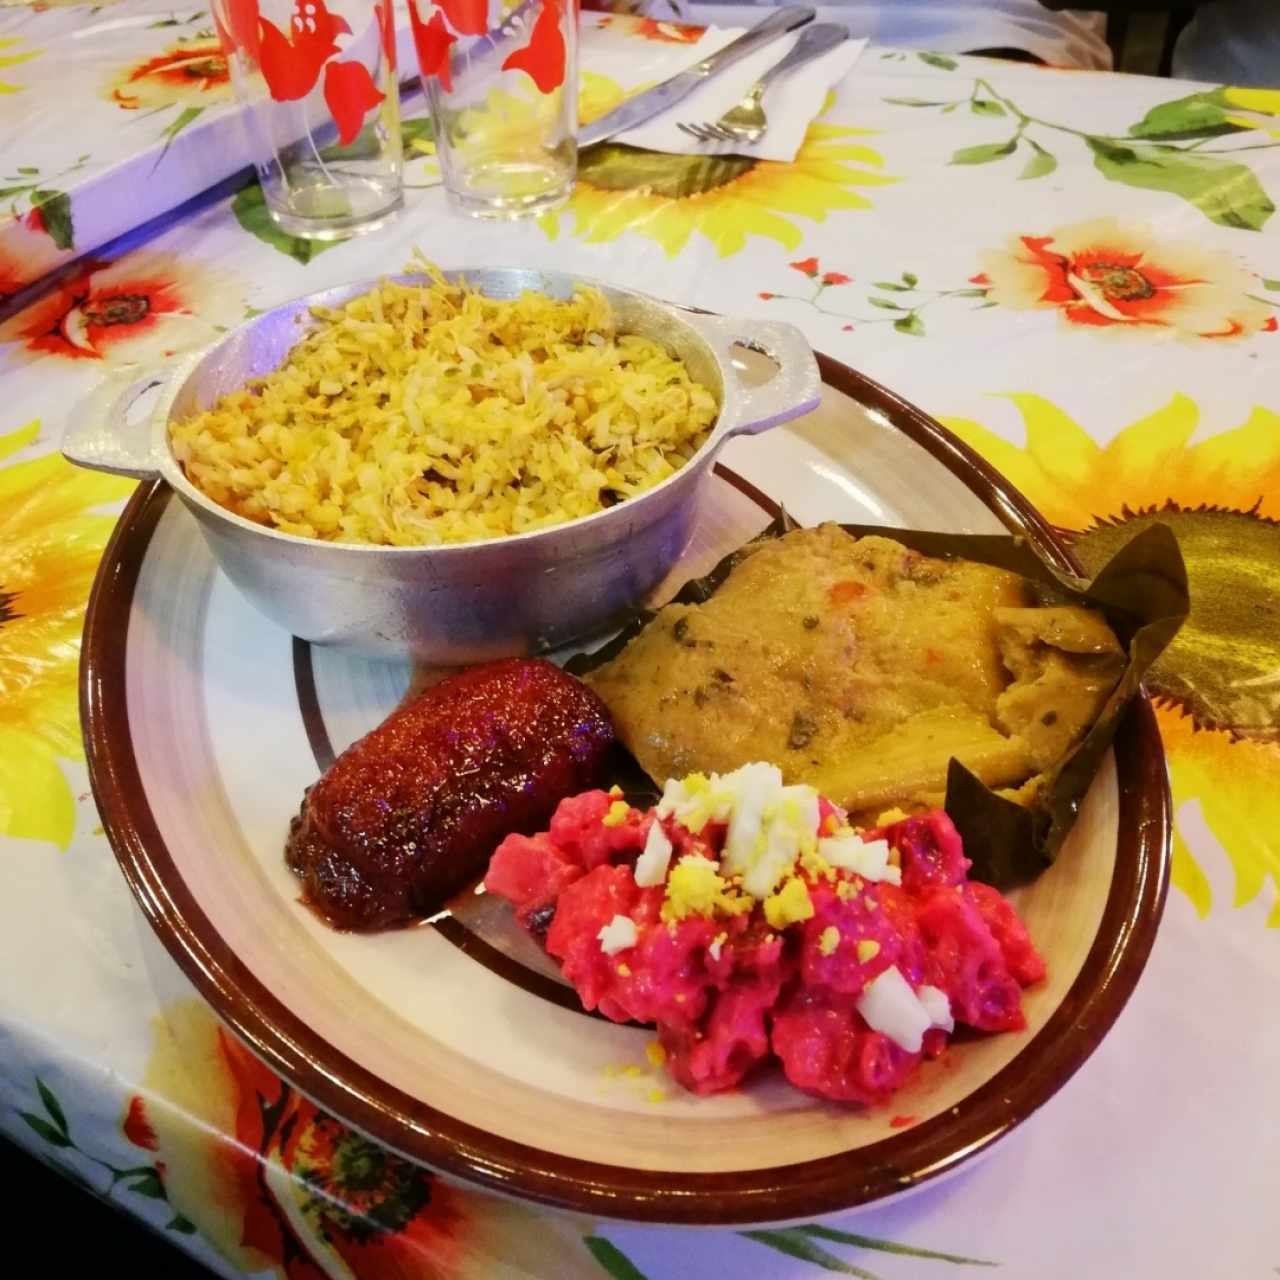 arroz con pollo tradicional, tamal de vegetales, ensalada roja tradicional y platano en tentación.